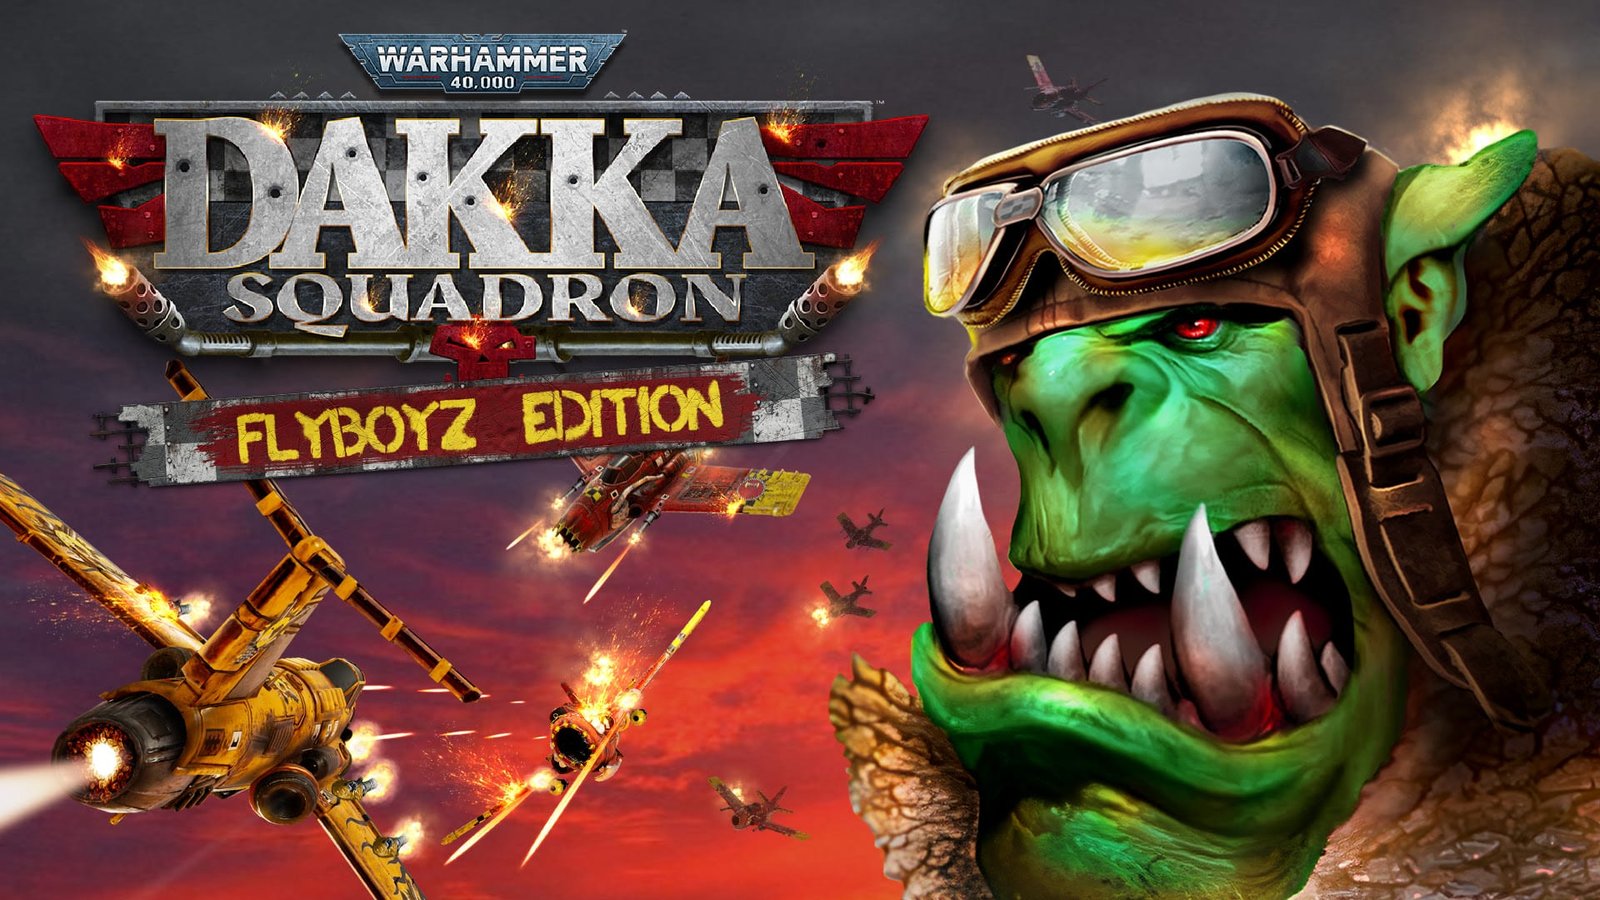 Les Orks se frayeront un chemin vers la victoire dans Warhammer 40,000 : Dakka Squadron – disponible sur le Nintendo eShop dès le 8 mars